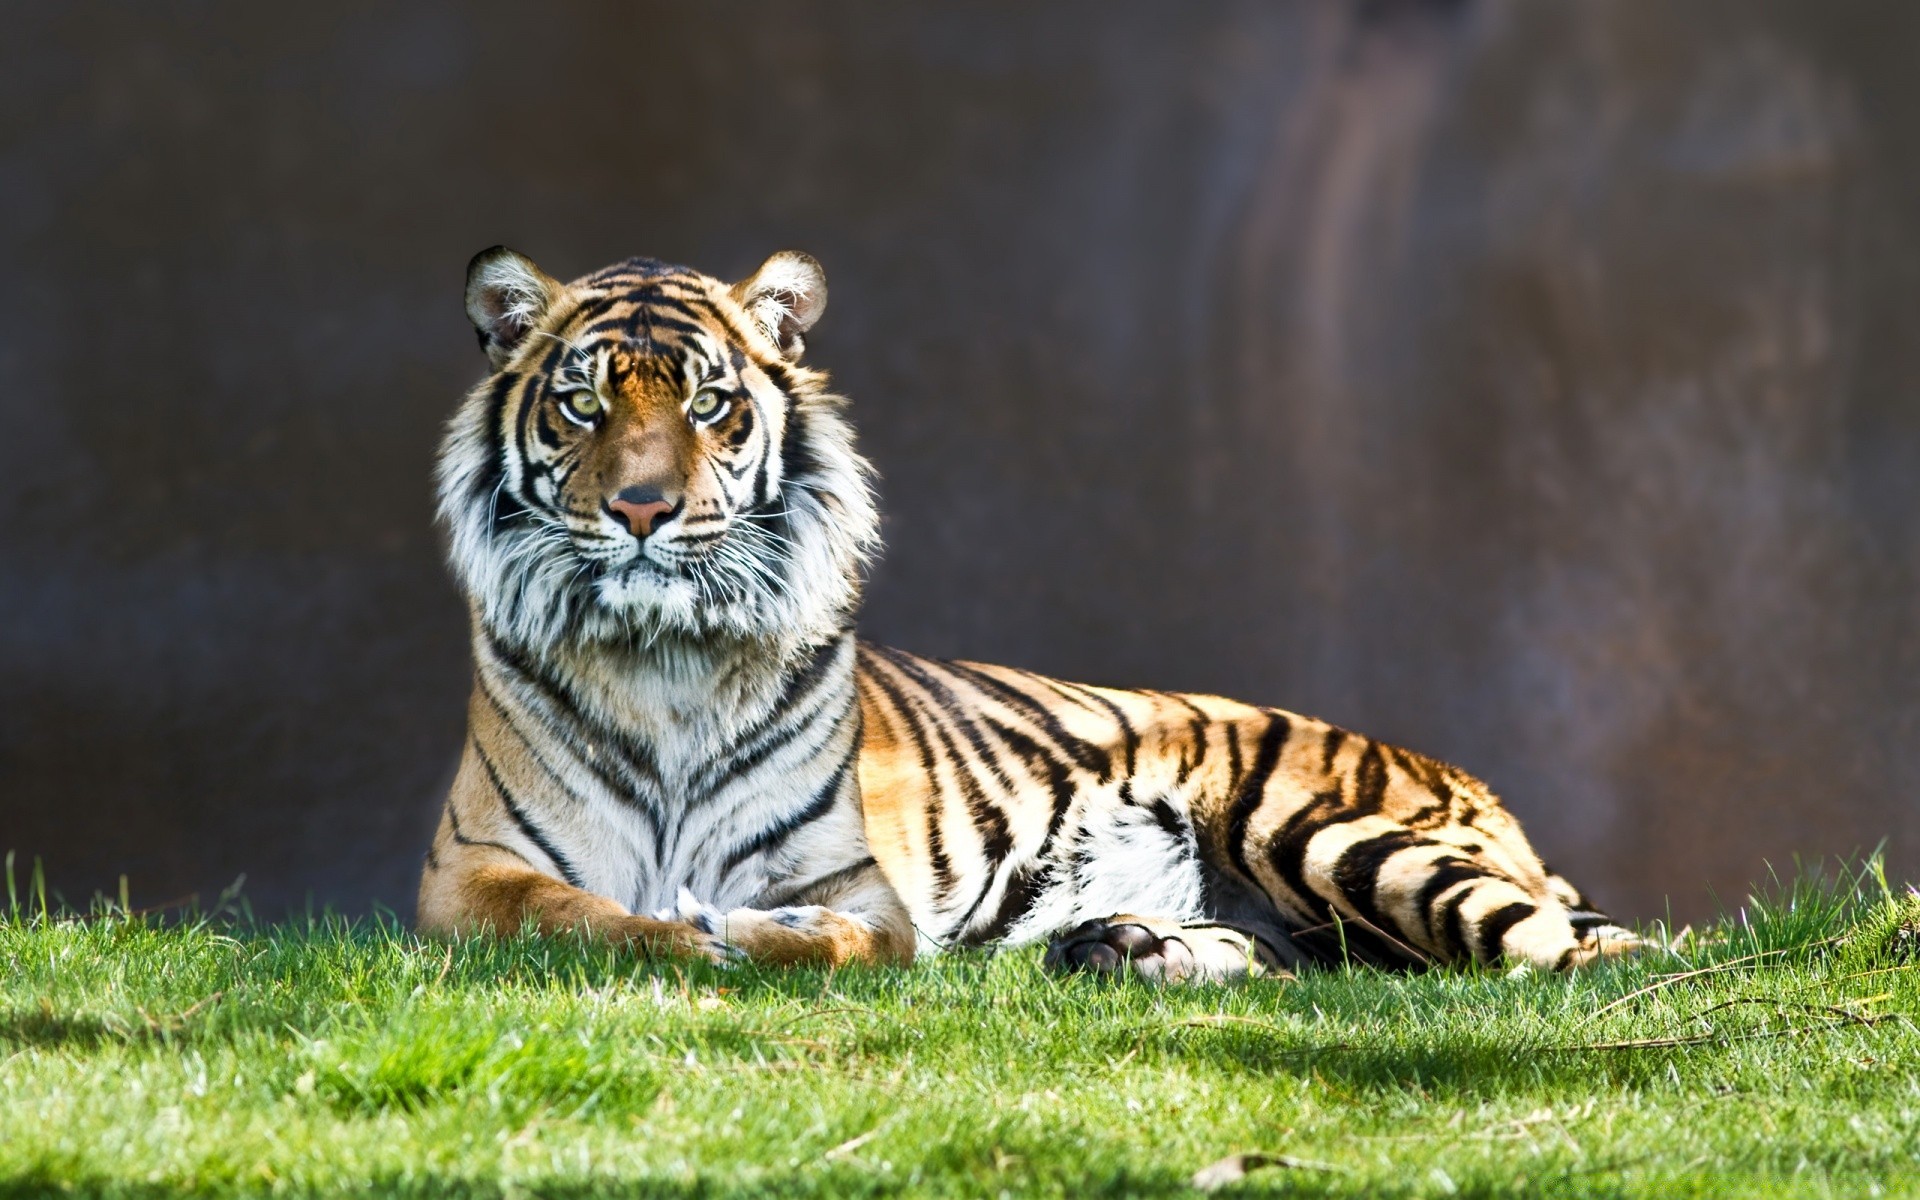 животные тигр дикой природы кошка млекопитающее животное дикий джунгли хищник охотник мясоед полоса большой зоопарк природа сафари мех охота портрет глава опасность